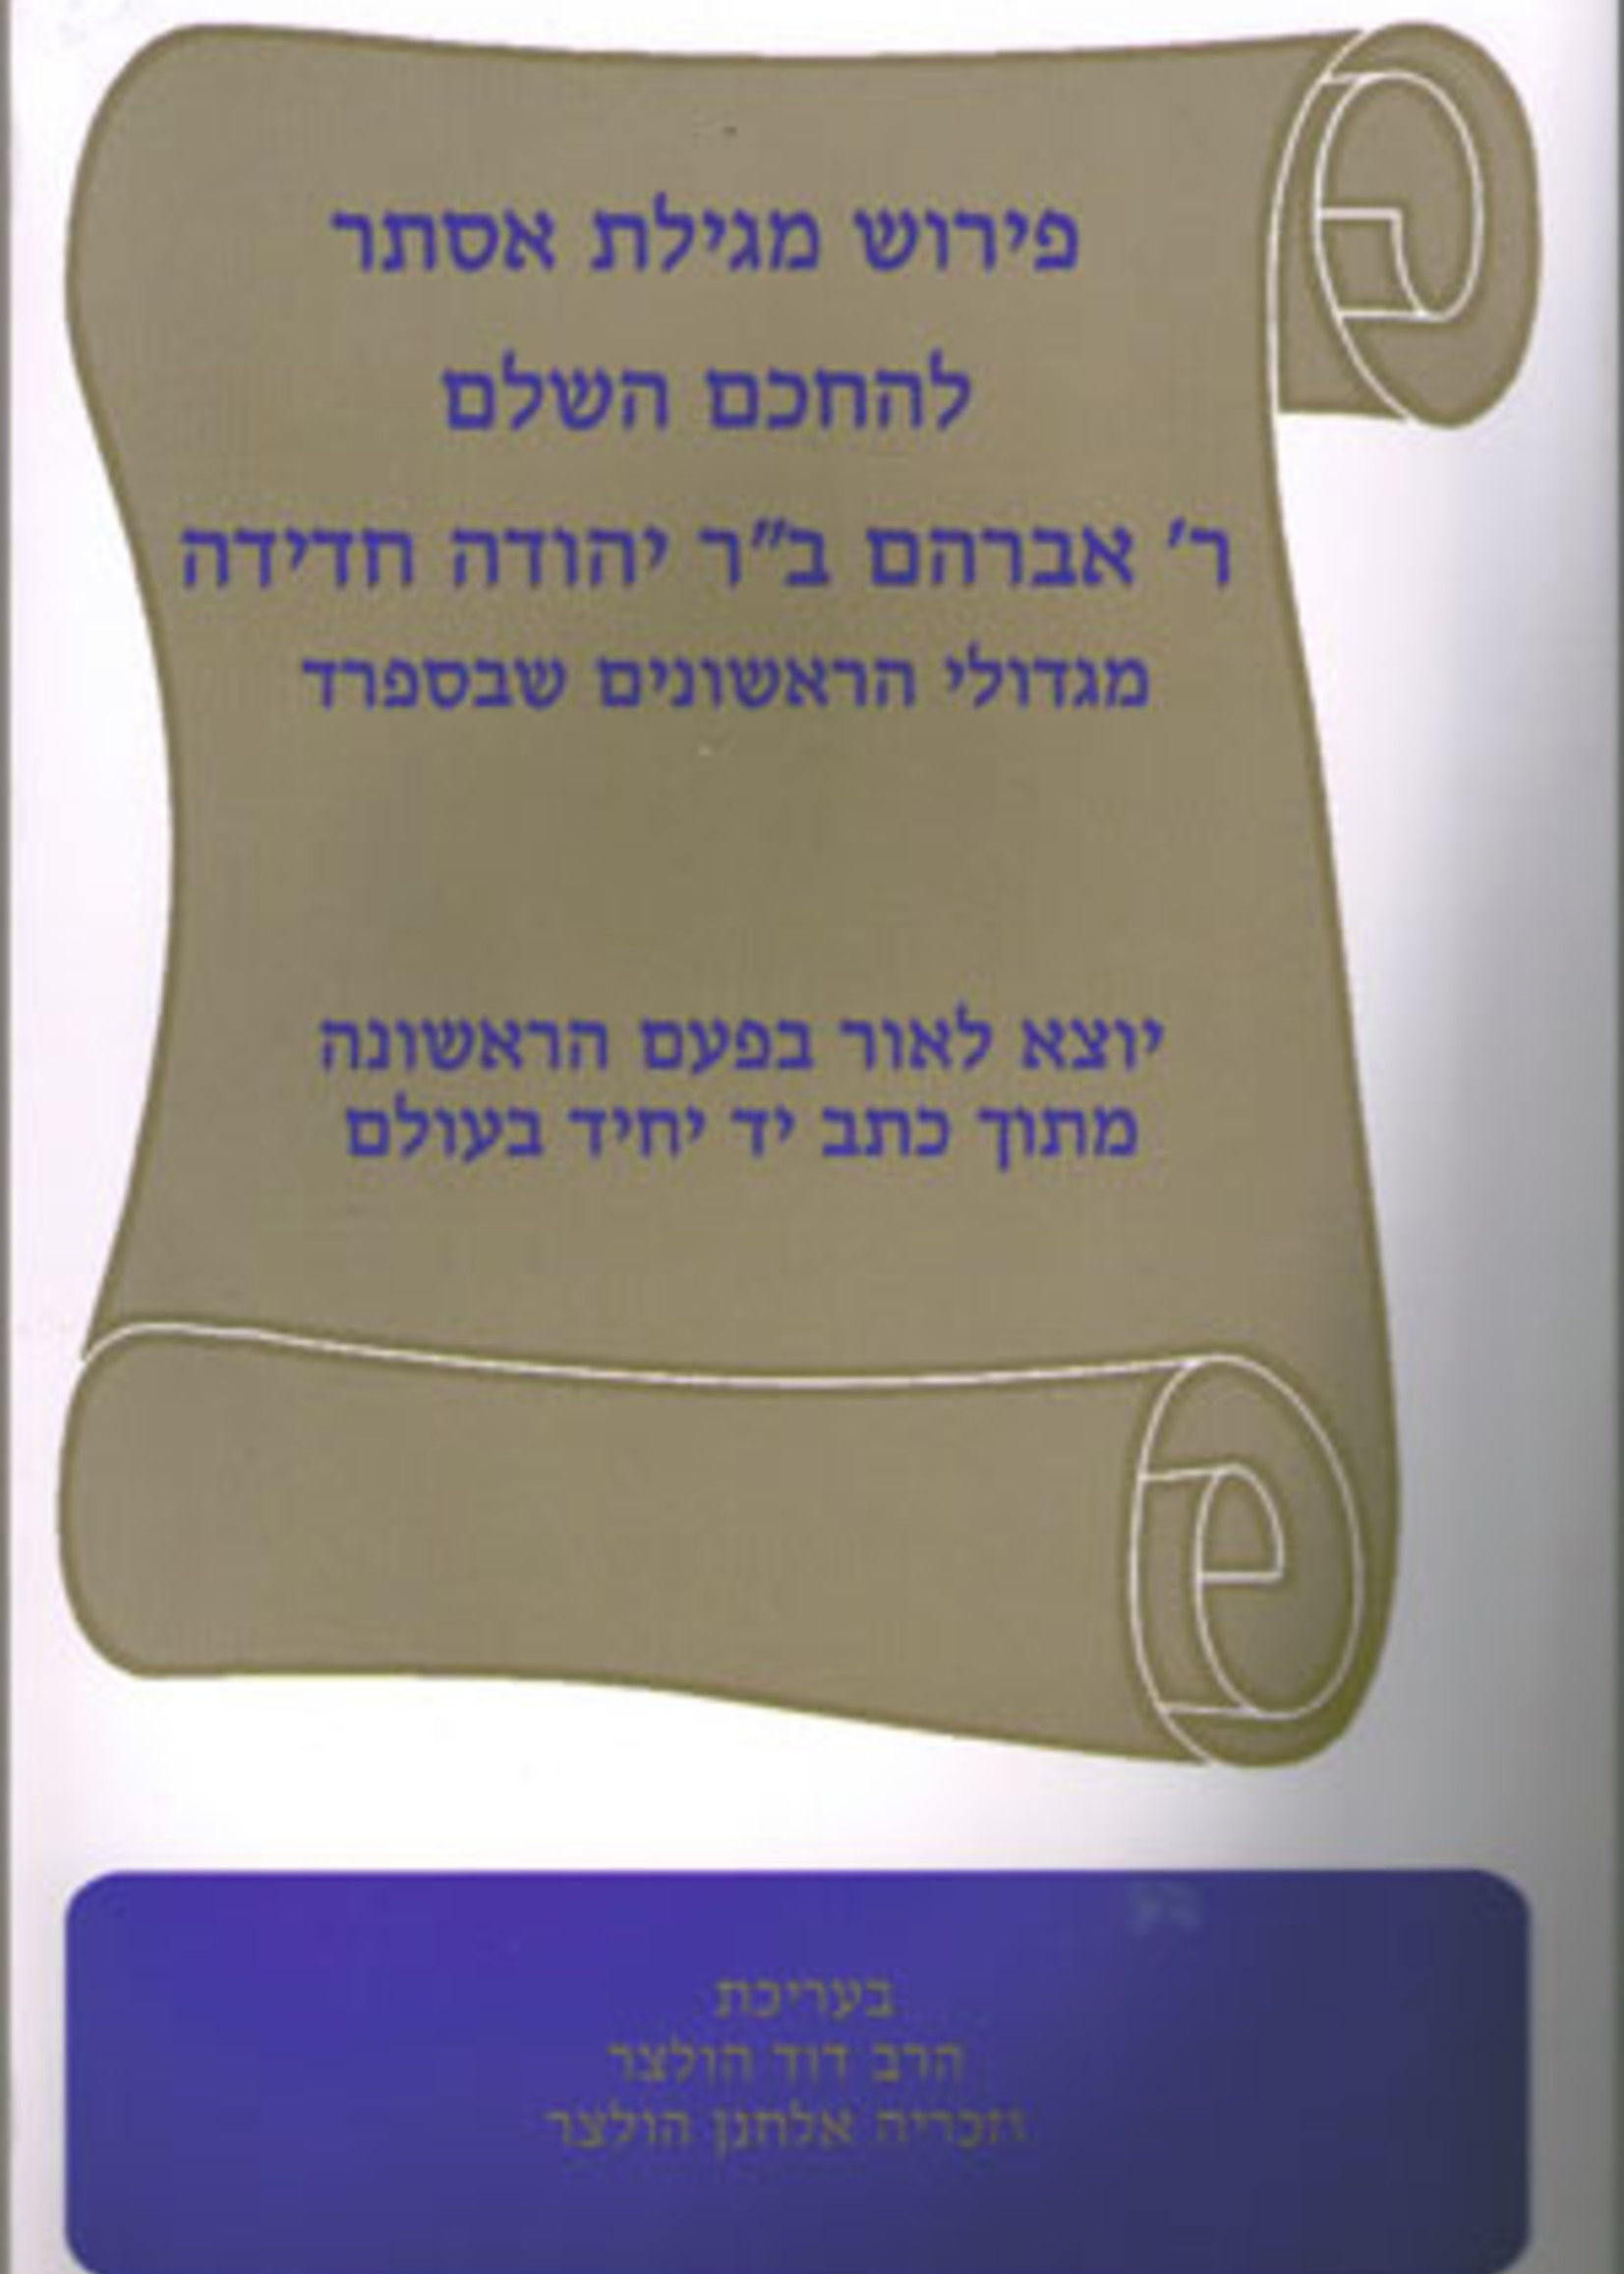 Rabbi Avraham Chadidah Megillat Esther - Peirush Rav Chadida/  מגילת אסתר עם פירוש רב חדידה